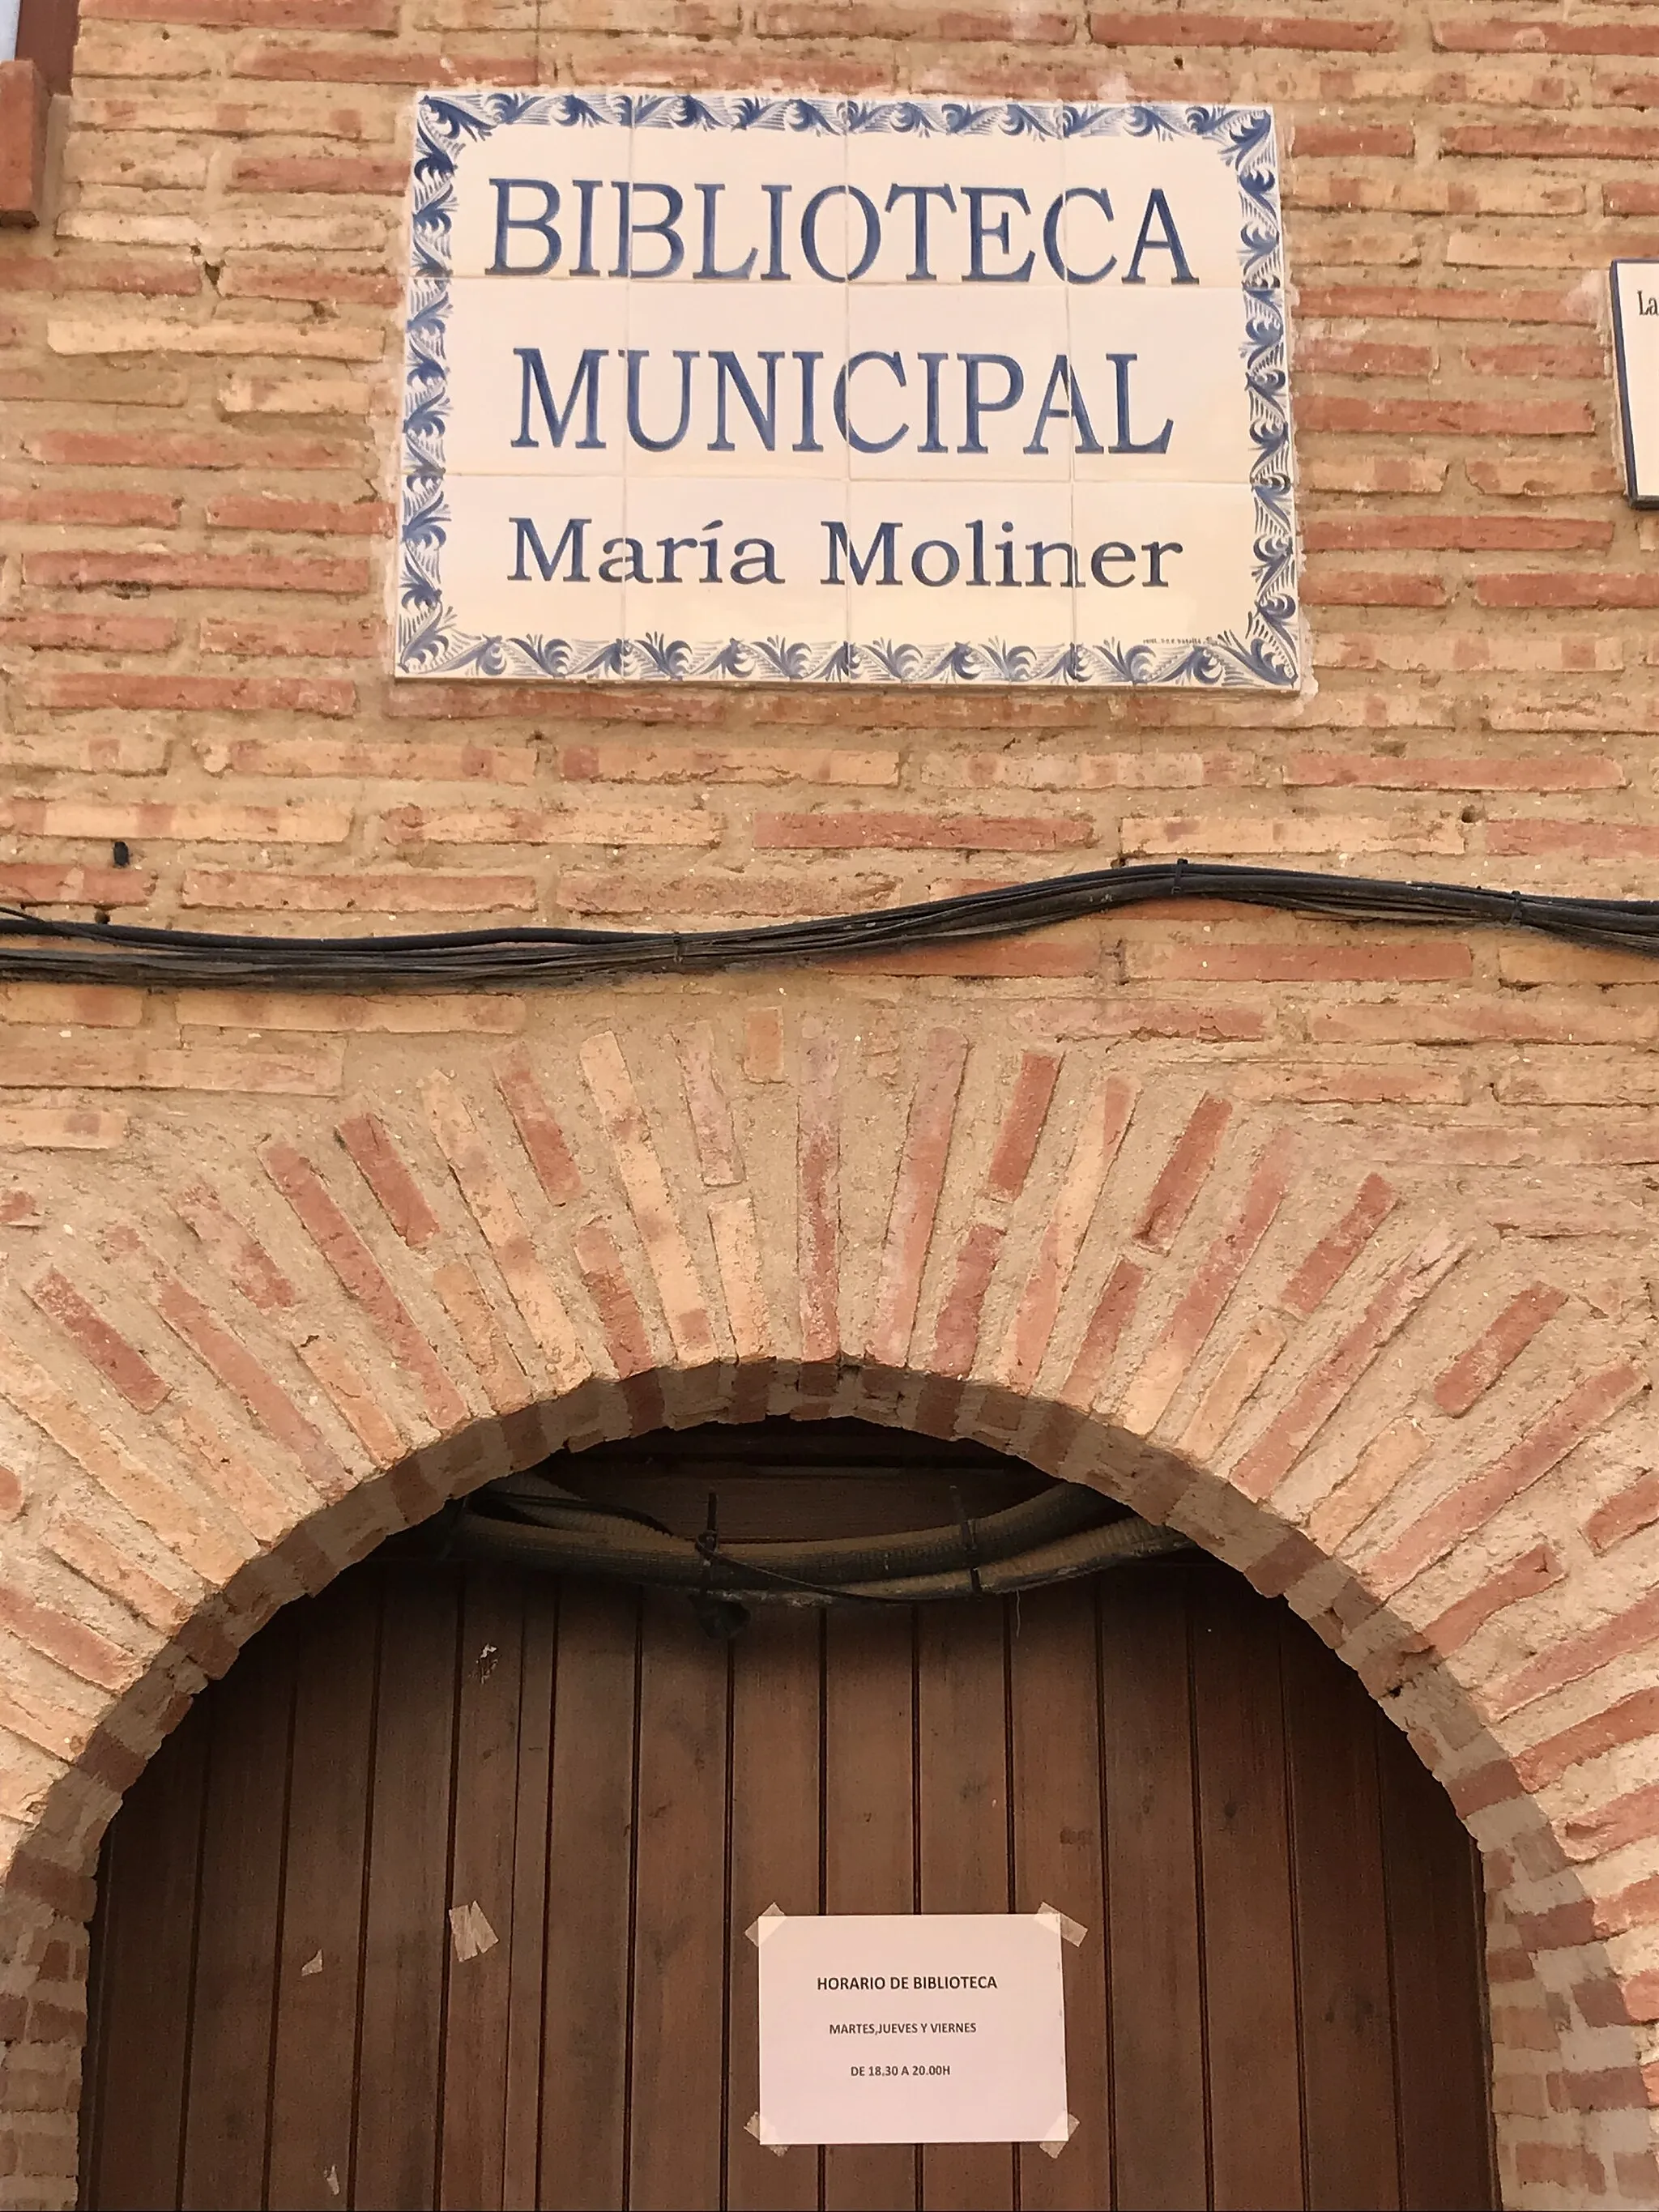 Photo showing: Cartel cerámico de la Biblioteca María Moliner en Paniza, Zaragoza